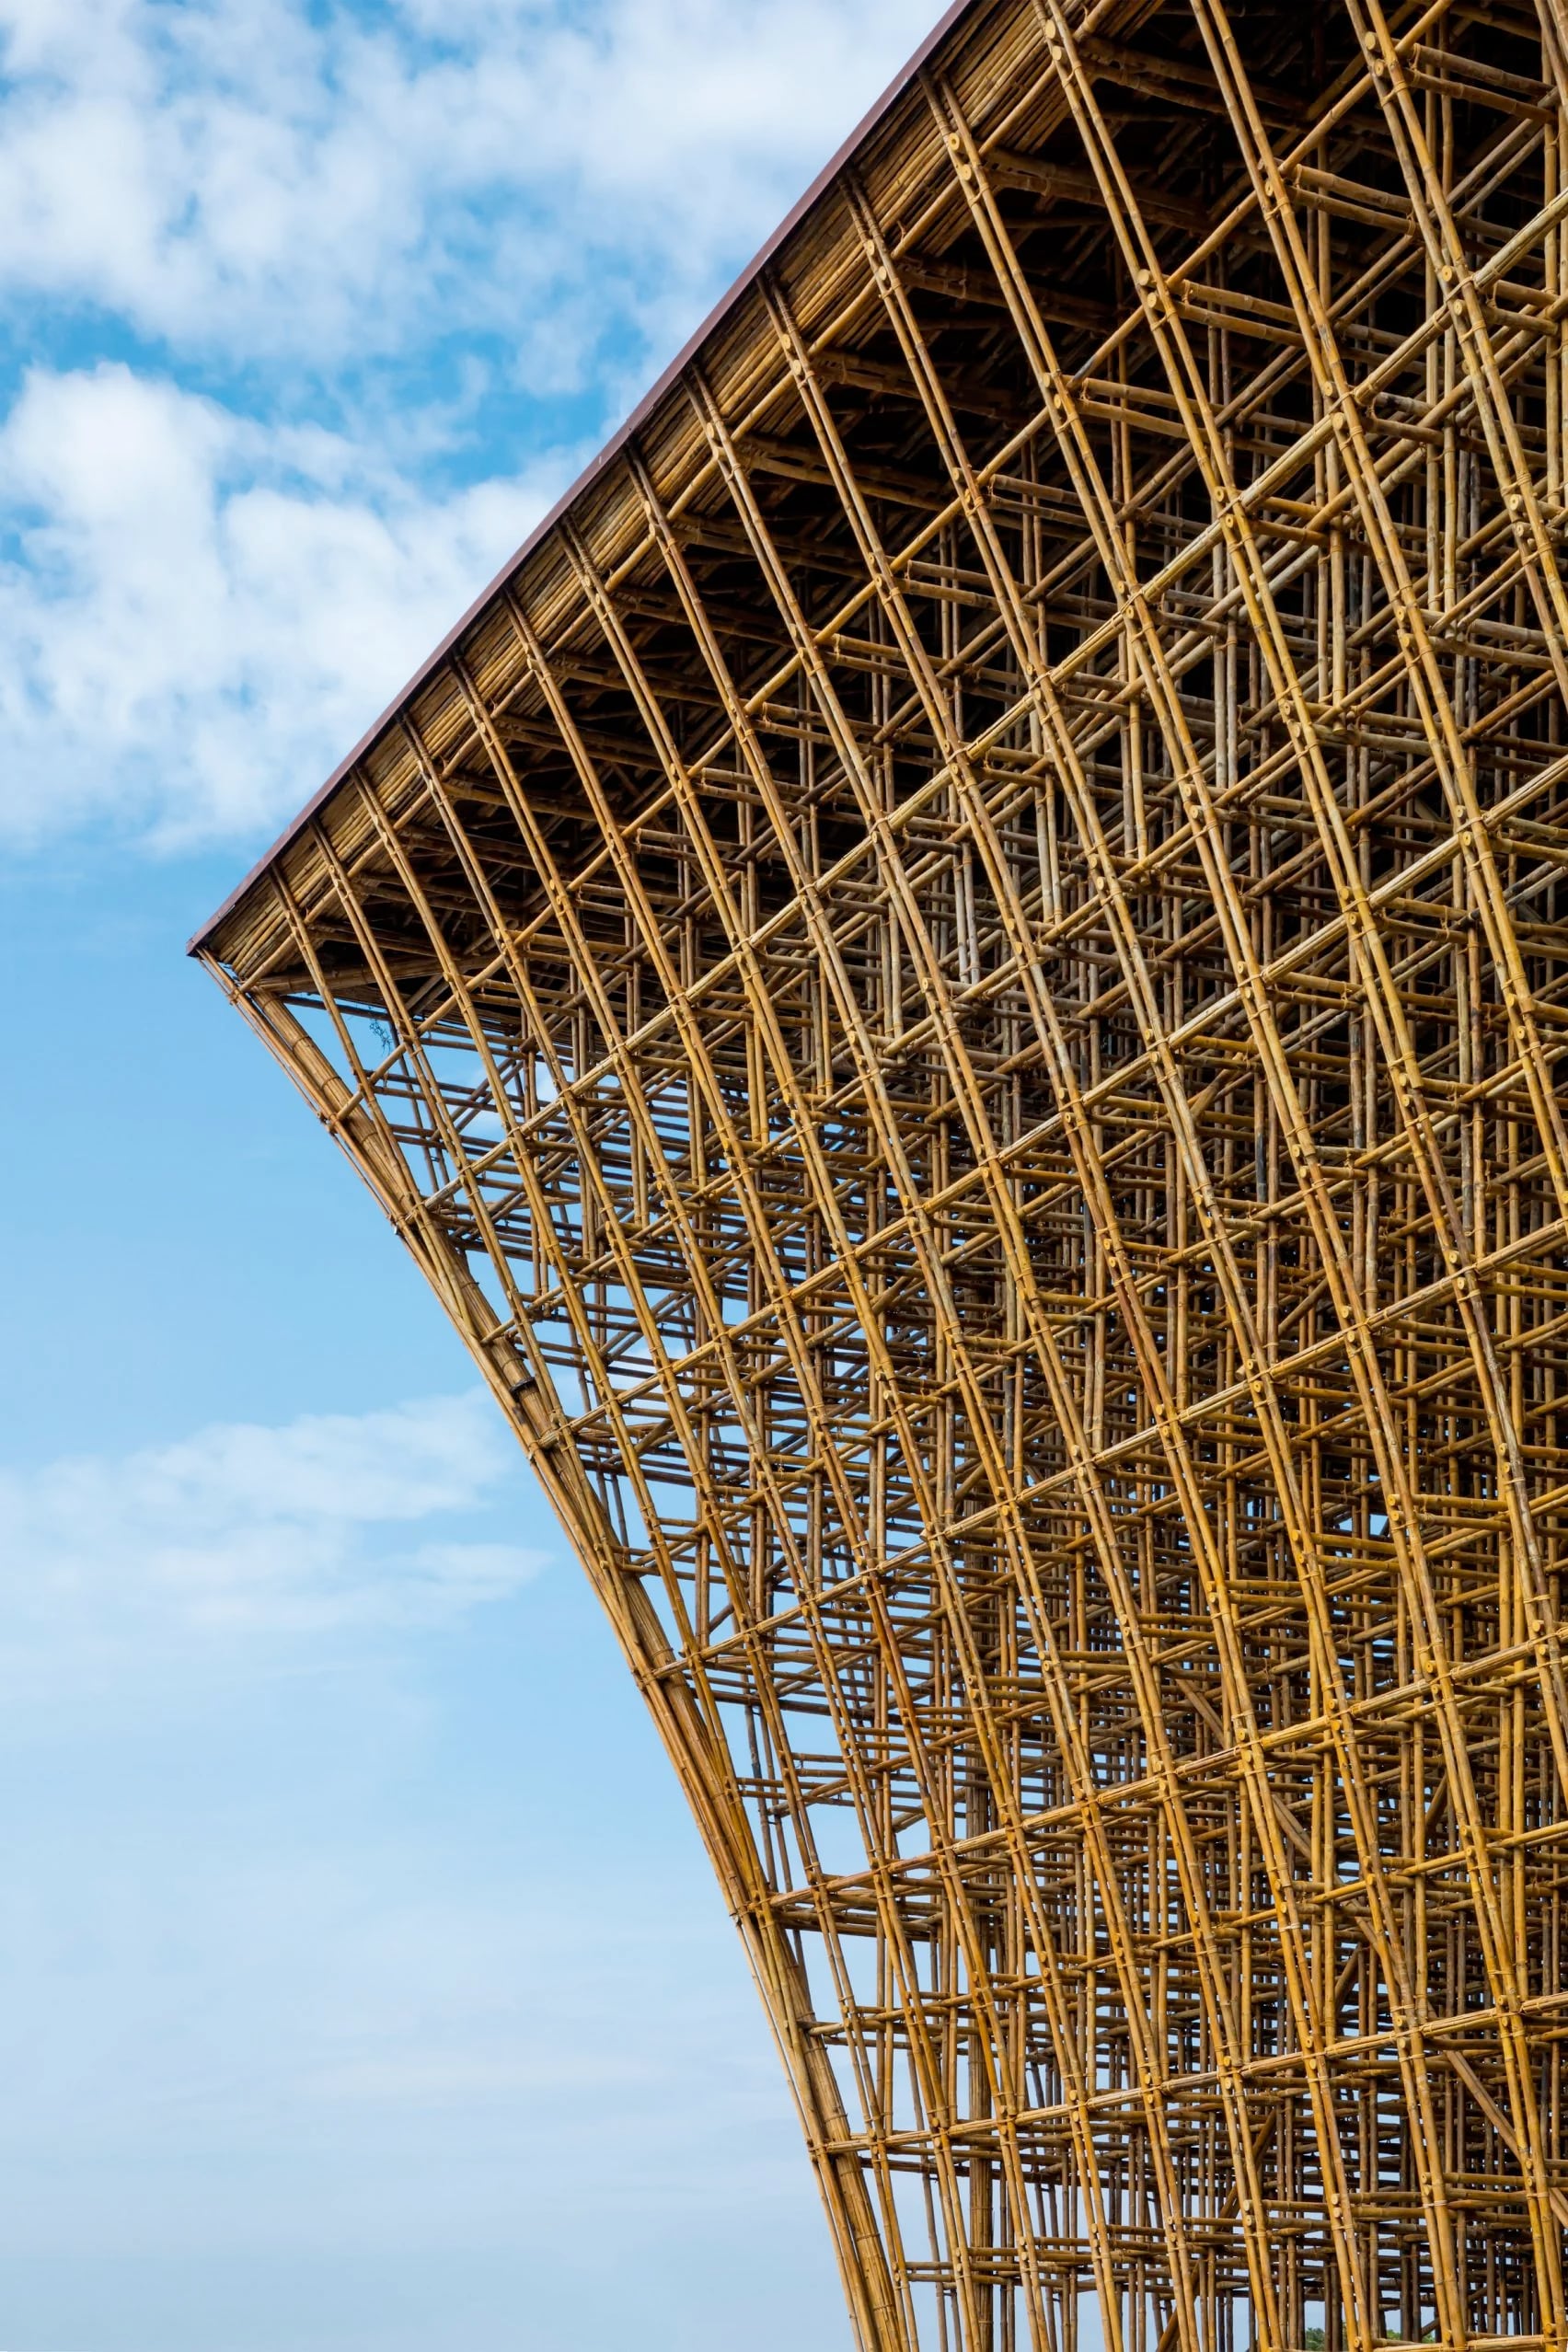 construccion en bambu sarquitectura verde vietnam detalle bambu